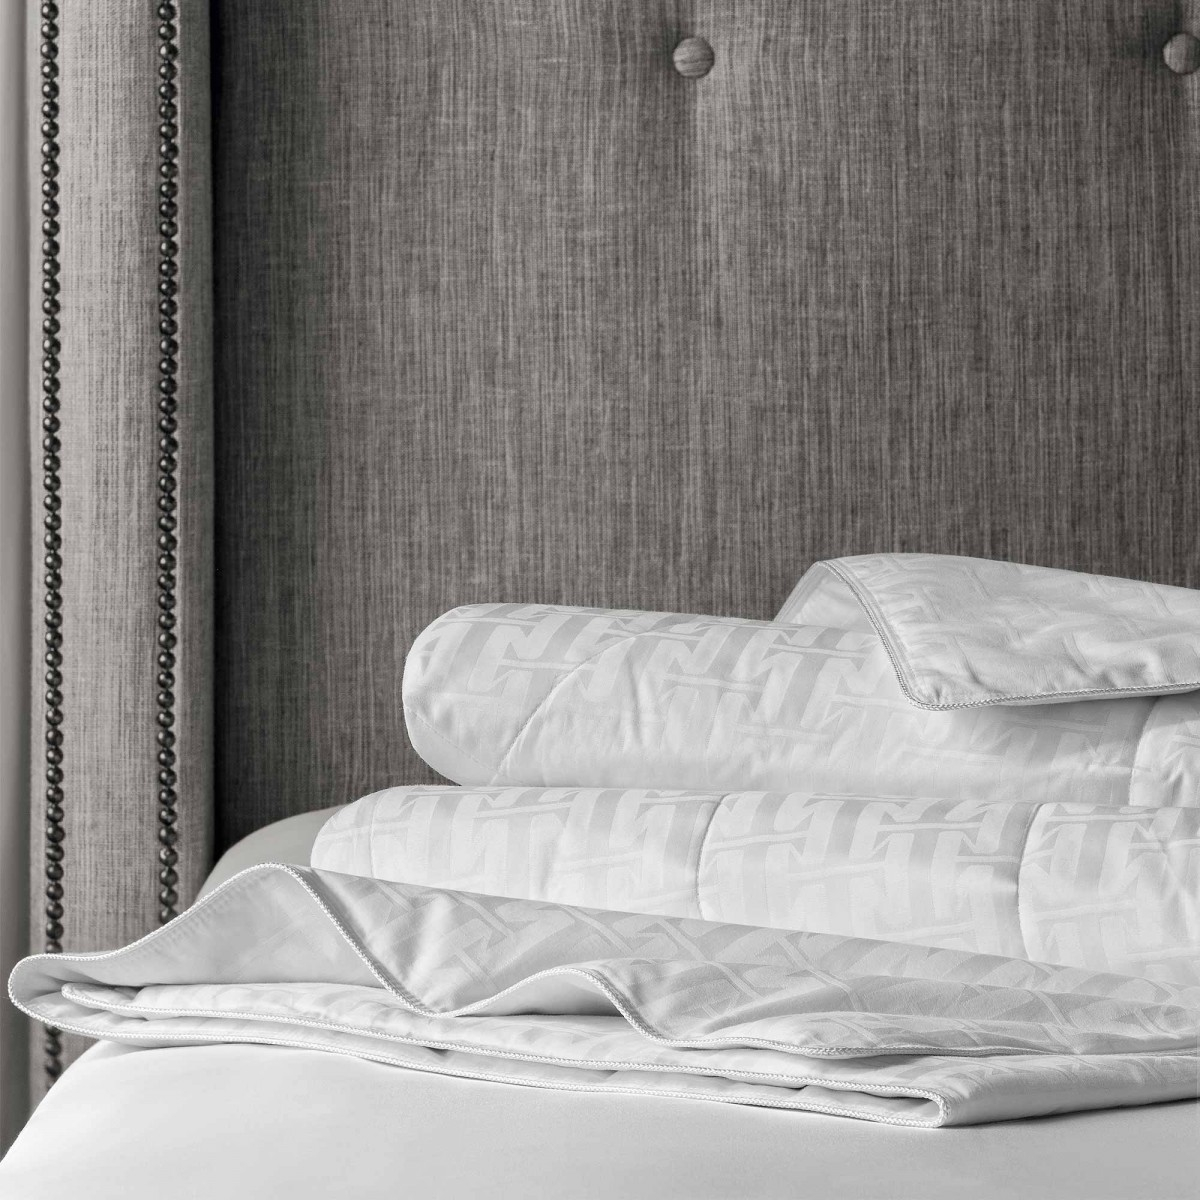 Одеяло Селена (200х210 см), размер 200х210 см, цвет белый tgs355764 Одеяло Селена (200х210 см) - фото 1